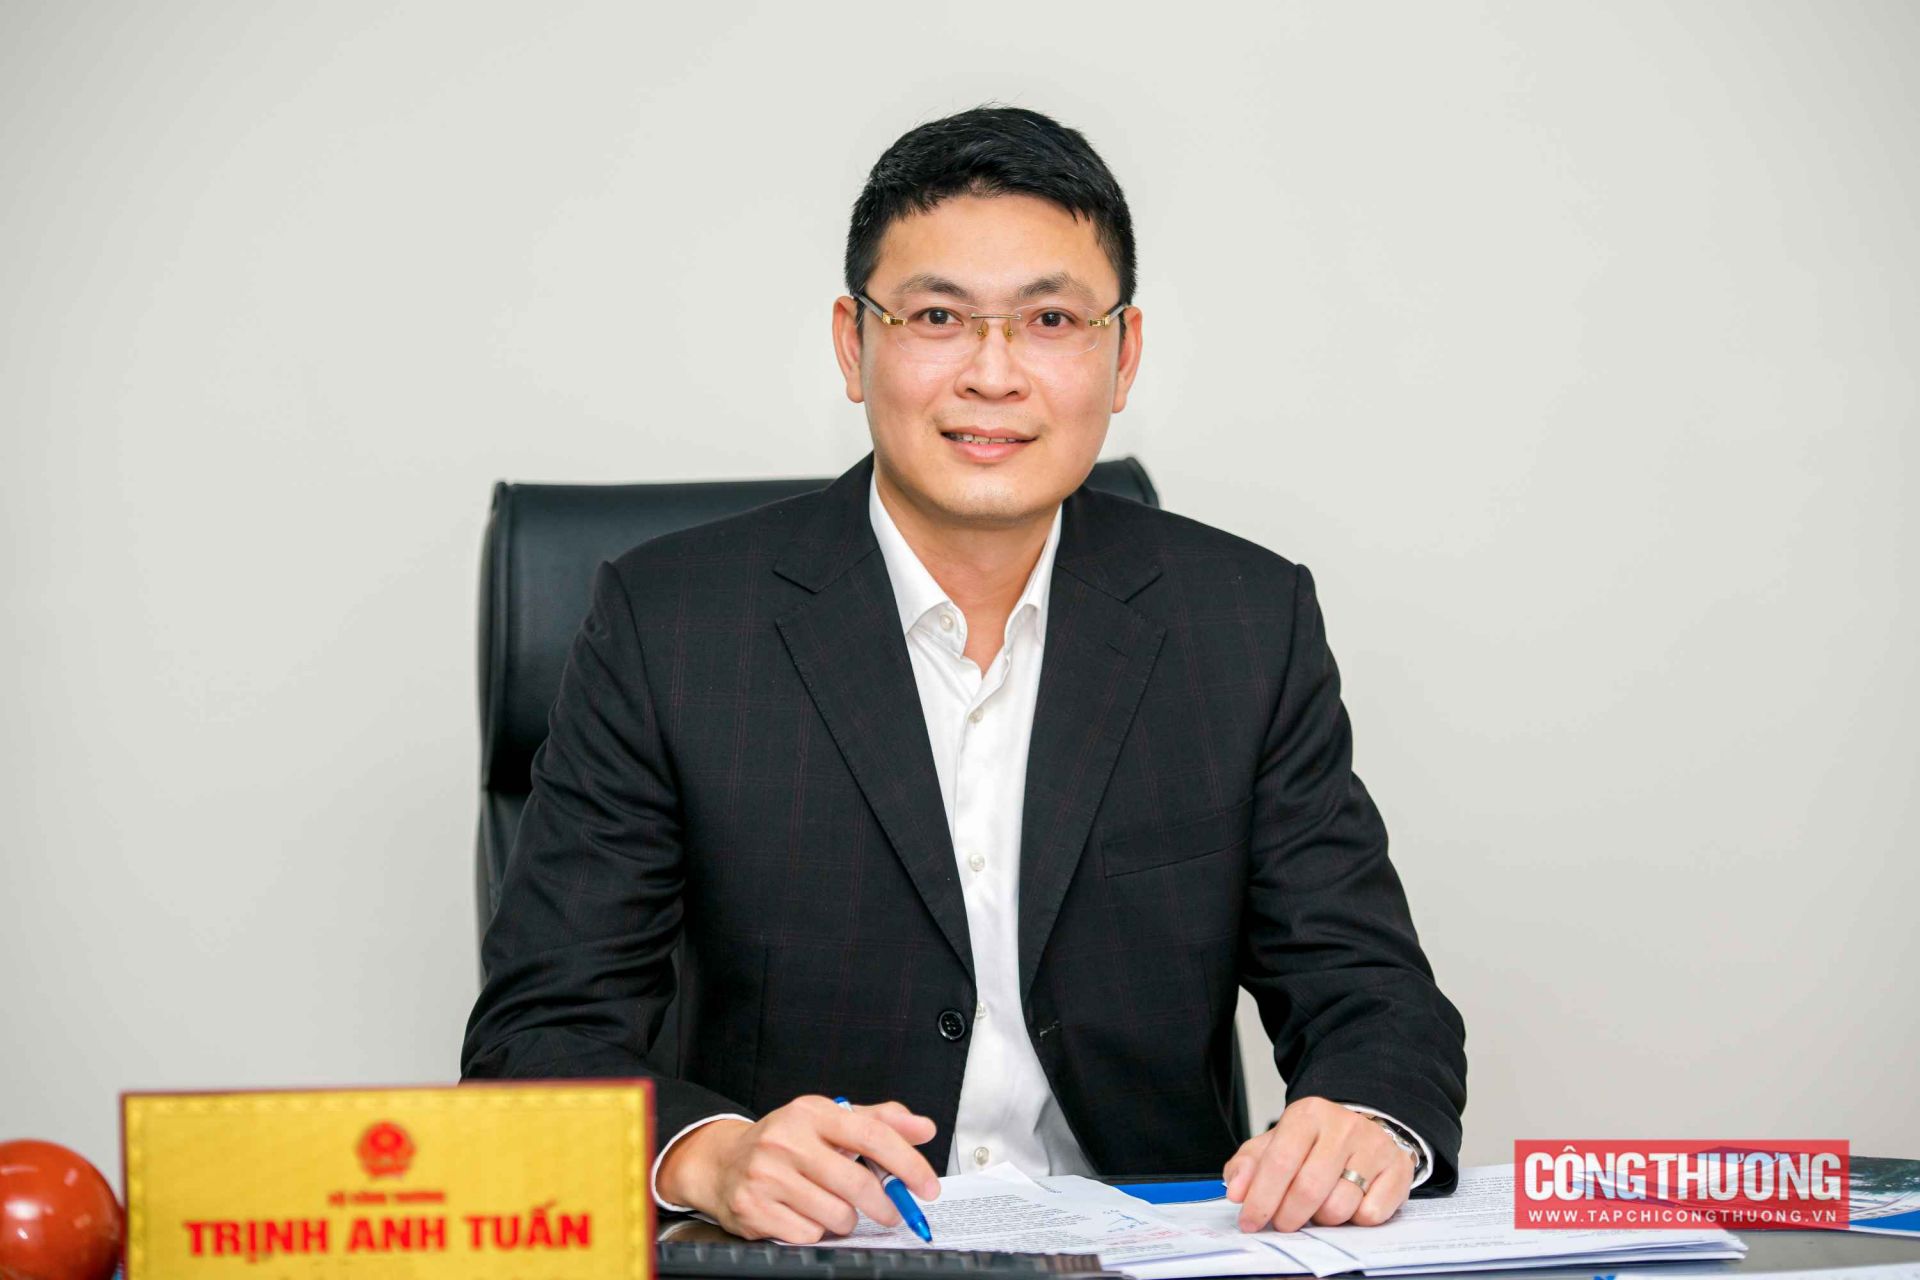 Ông Trịnh Anh Tuấn - Cục trưởng Cục Phòng vệ thương mại, Bộ Công Thương